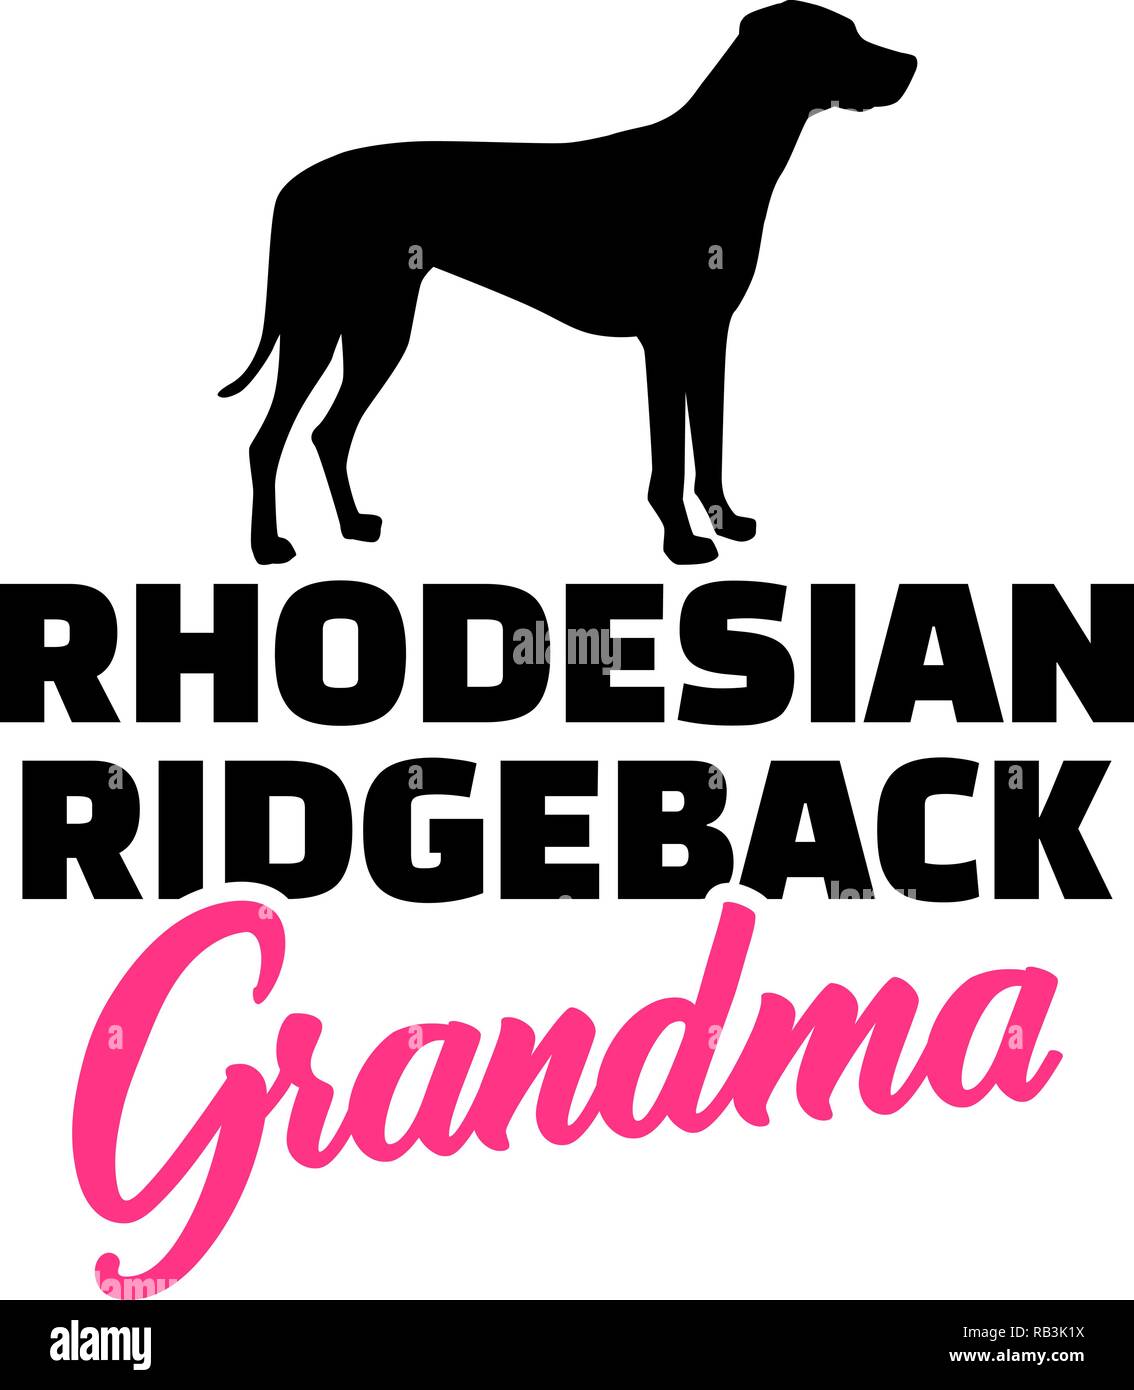 Ridgeback rhodesiano nonna silhouette in nero Illustrazione Vettoriale